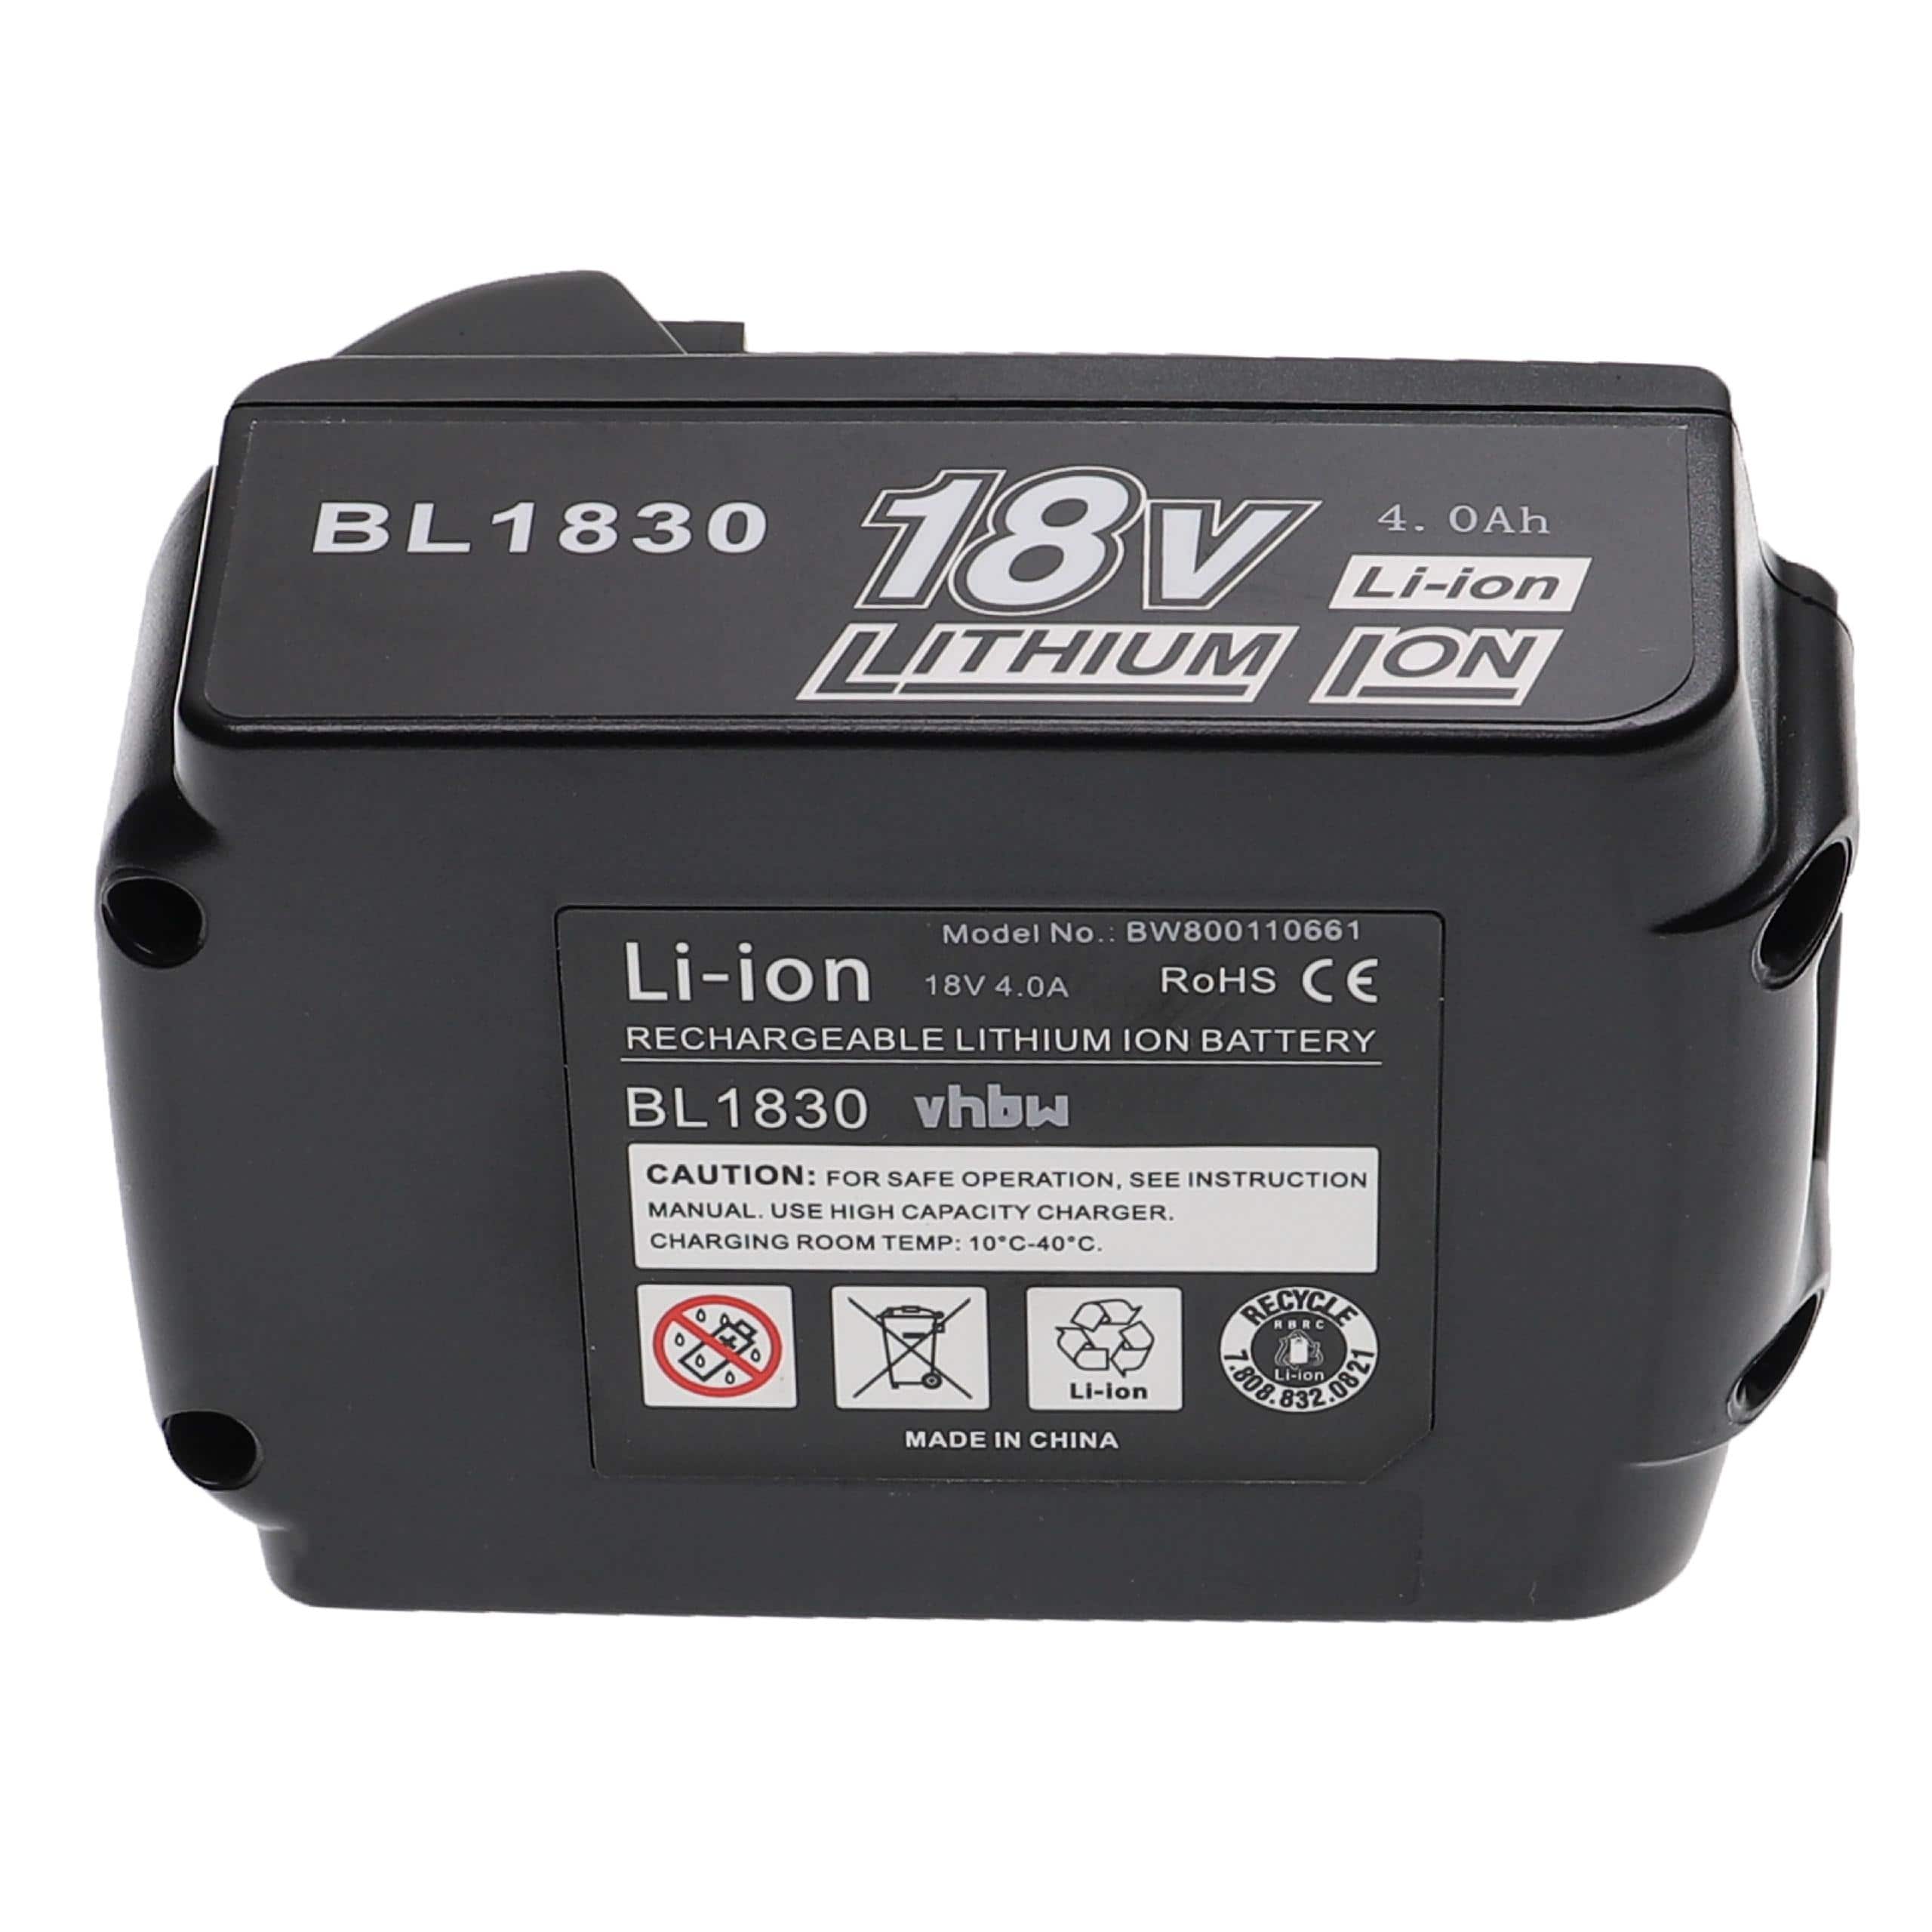 Batterie remplace Makita 194309-1, 194230-4, 194205-3, 194204-5 pour outil électrique - 4000 mAh, 18 V, Li-ion